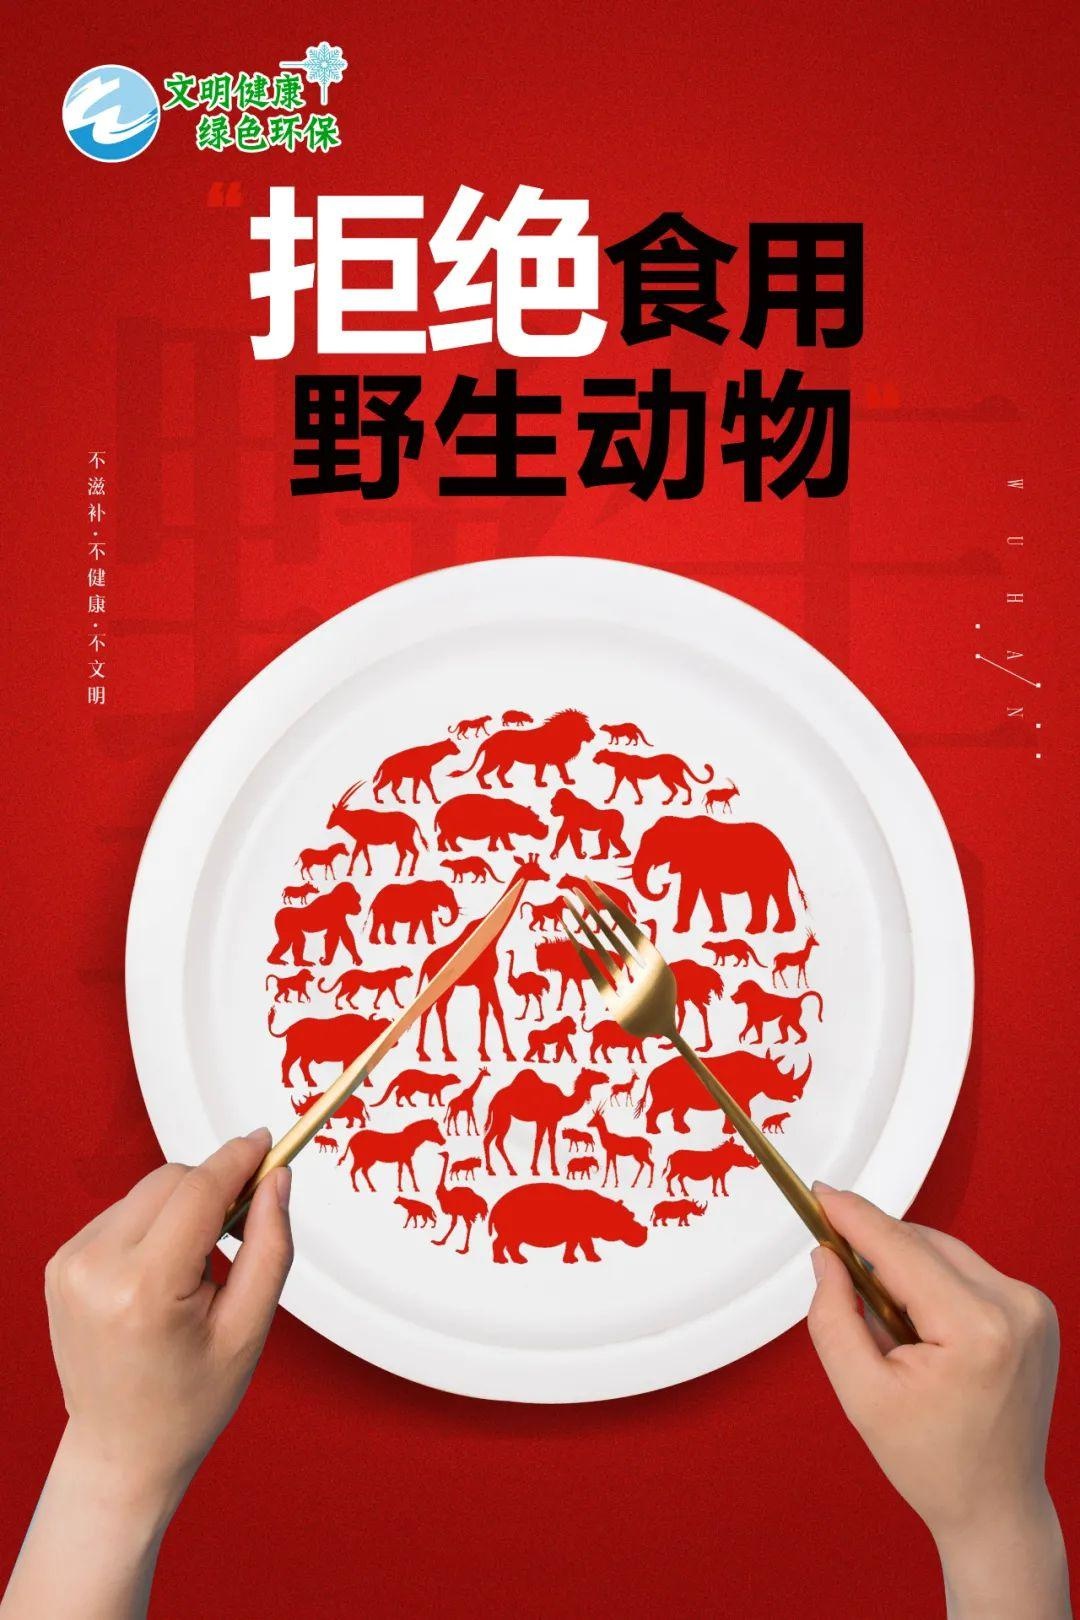 「公益广告」拒绝食用 野生动物